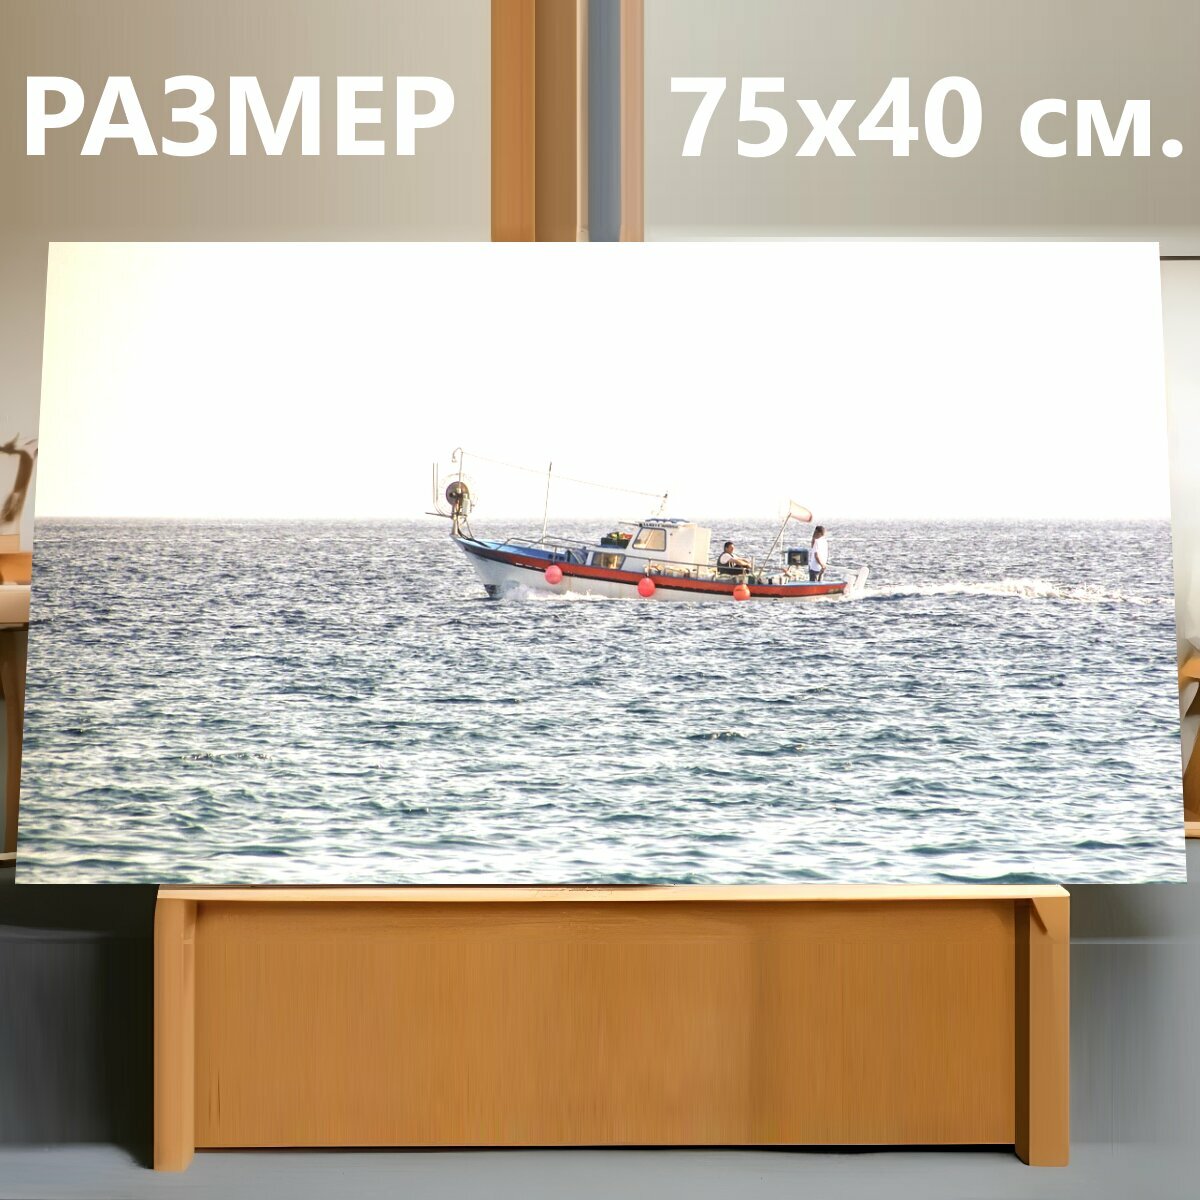 Картина на холсте "Рыболовная лодка, ловит рыбу, море" на подрамнике 75х40 см. для интерьера